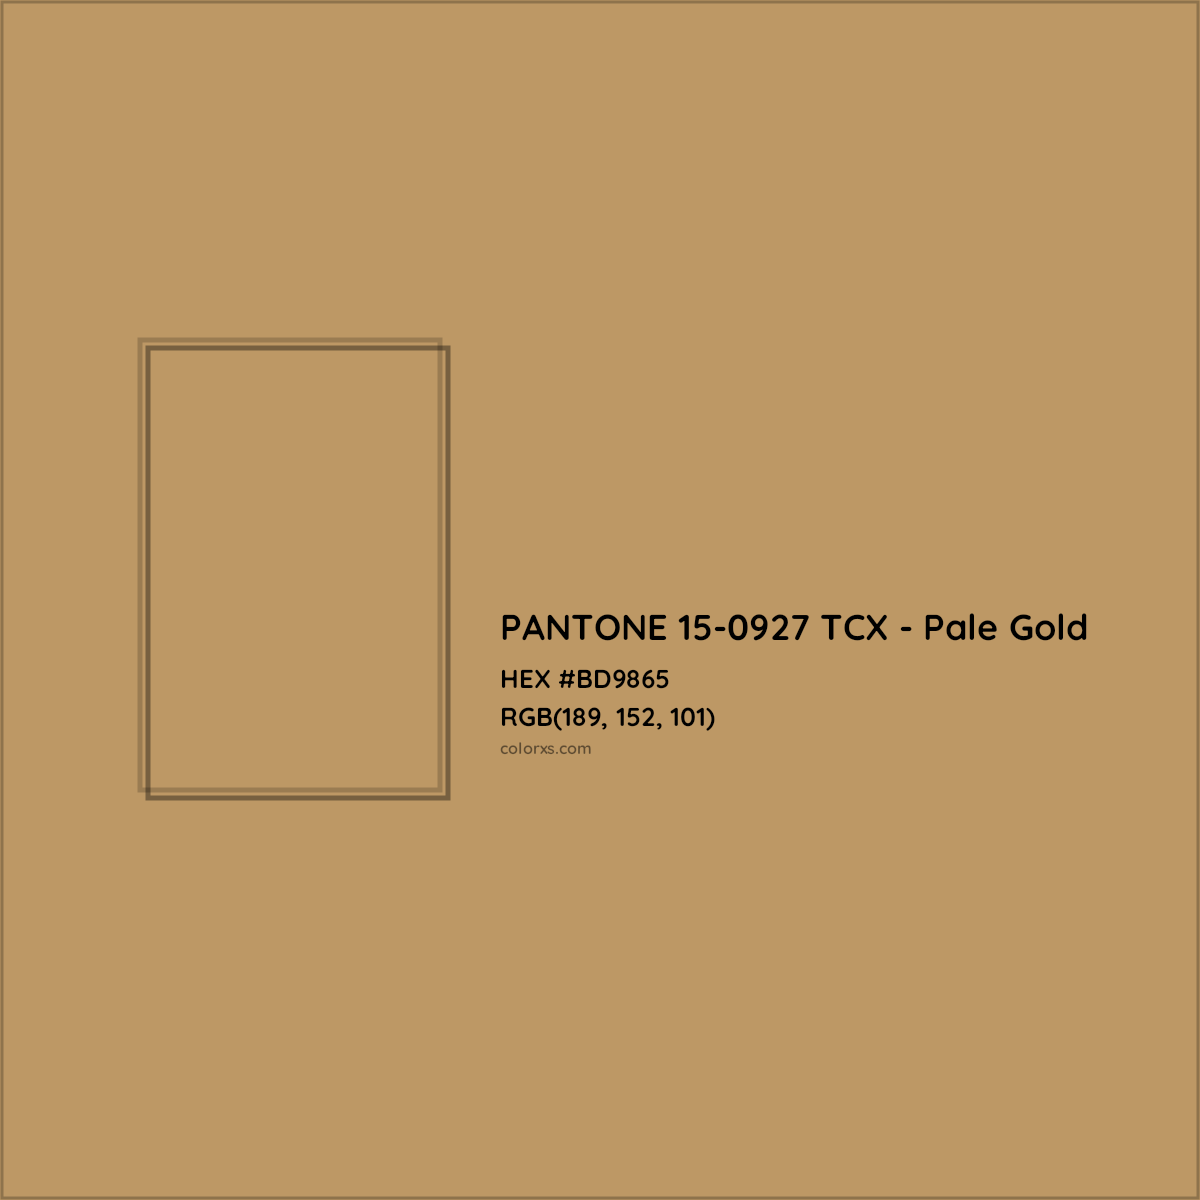 About PANTONE 15-0927 TCX - Pale Gold Color - Color codes, similar ...